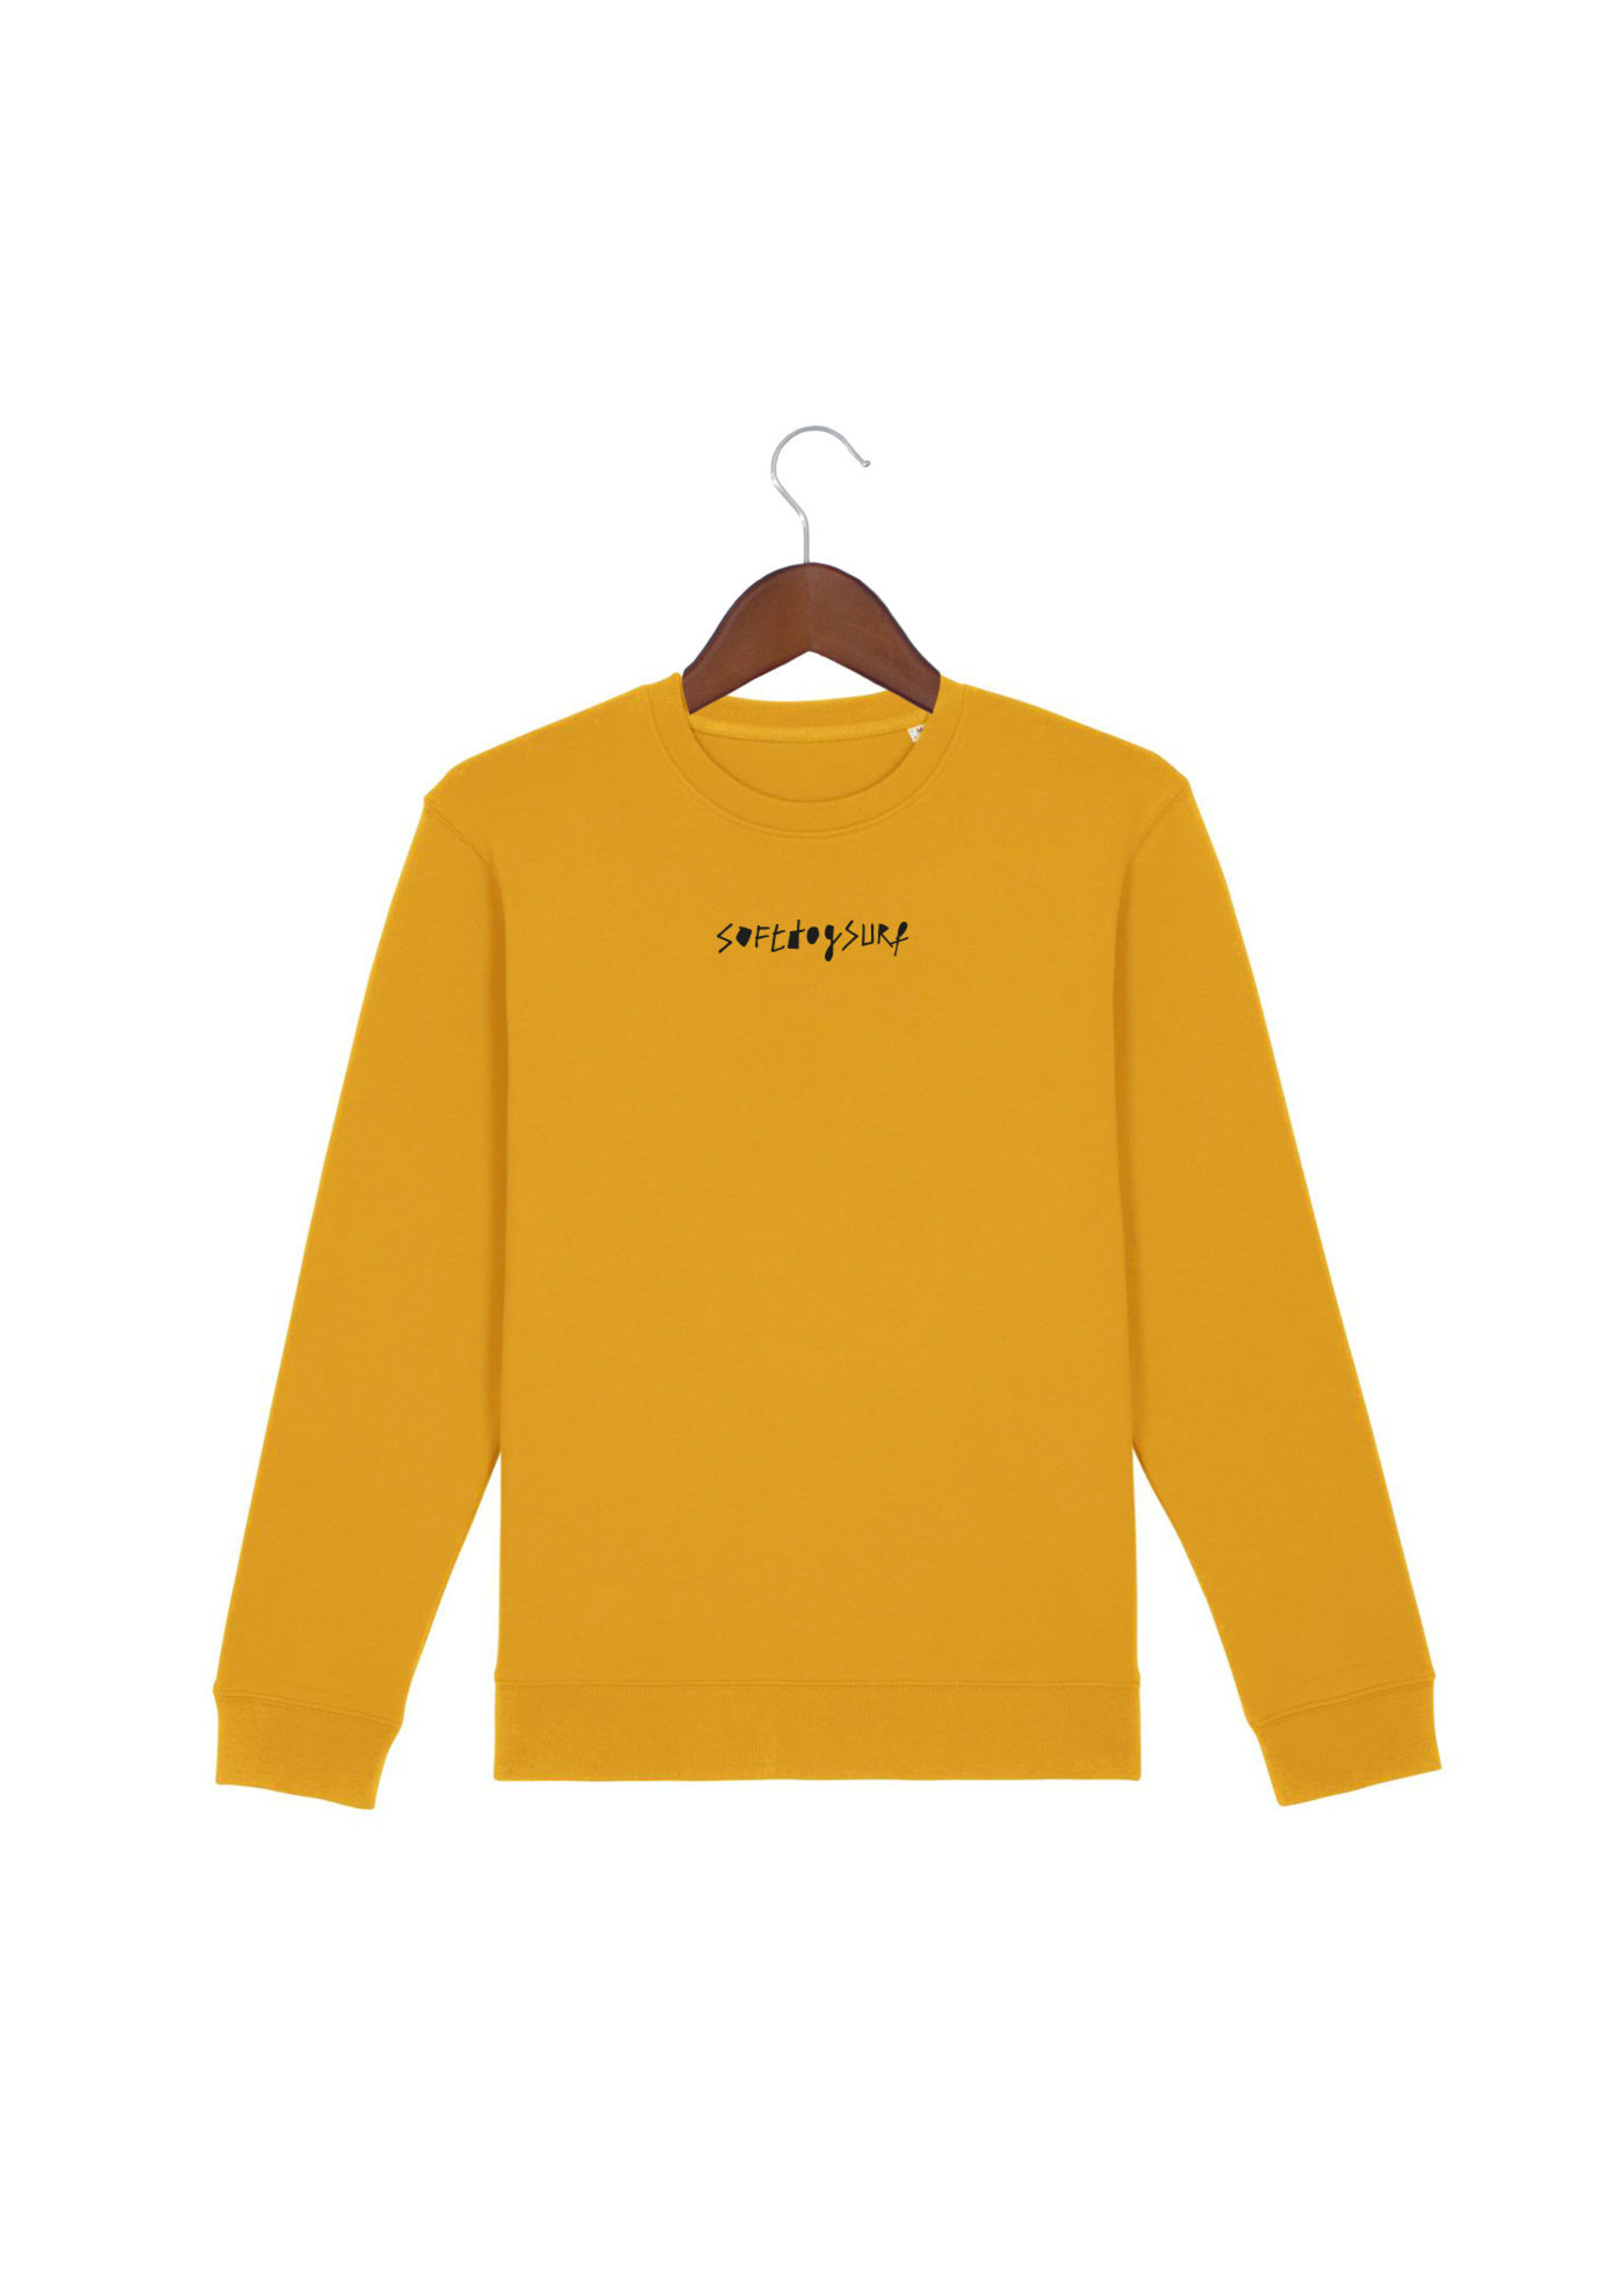 Softdog Yellow Brand Sweater